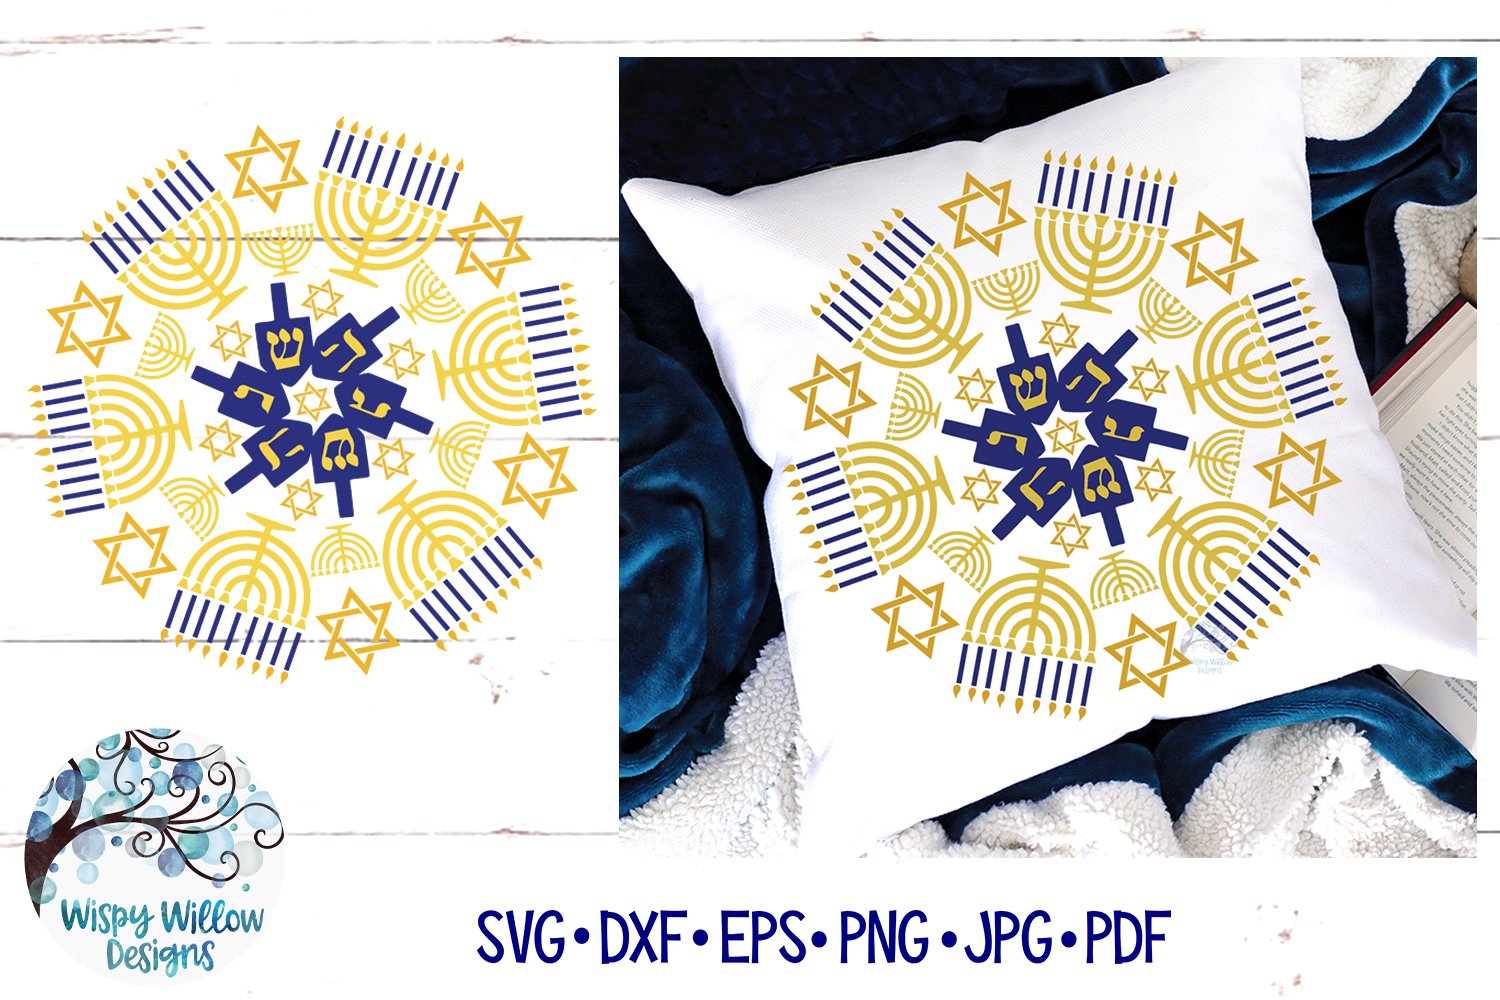 Pillow with design Hanukkah Mandala Cover.